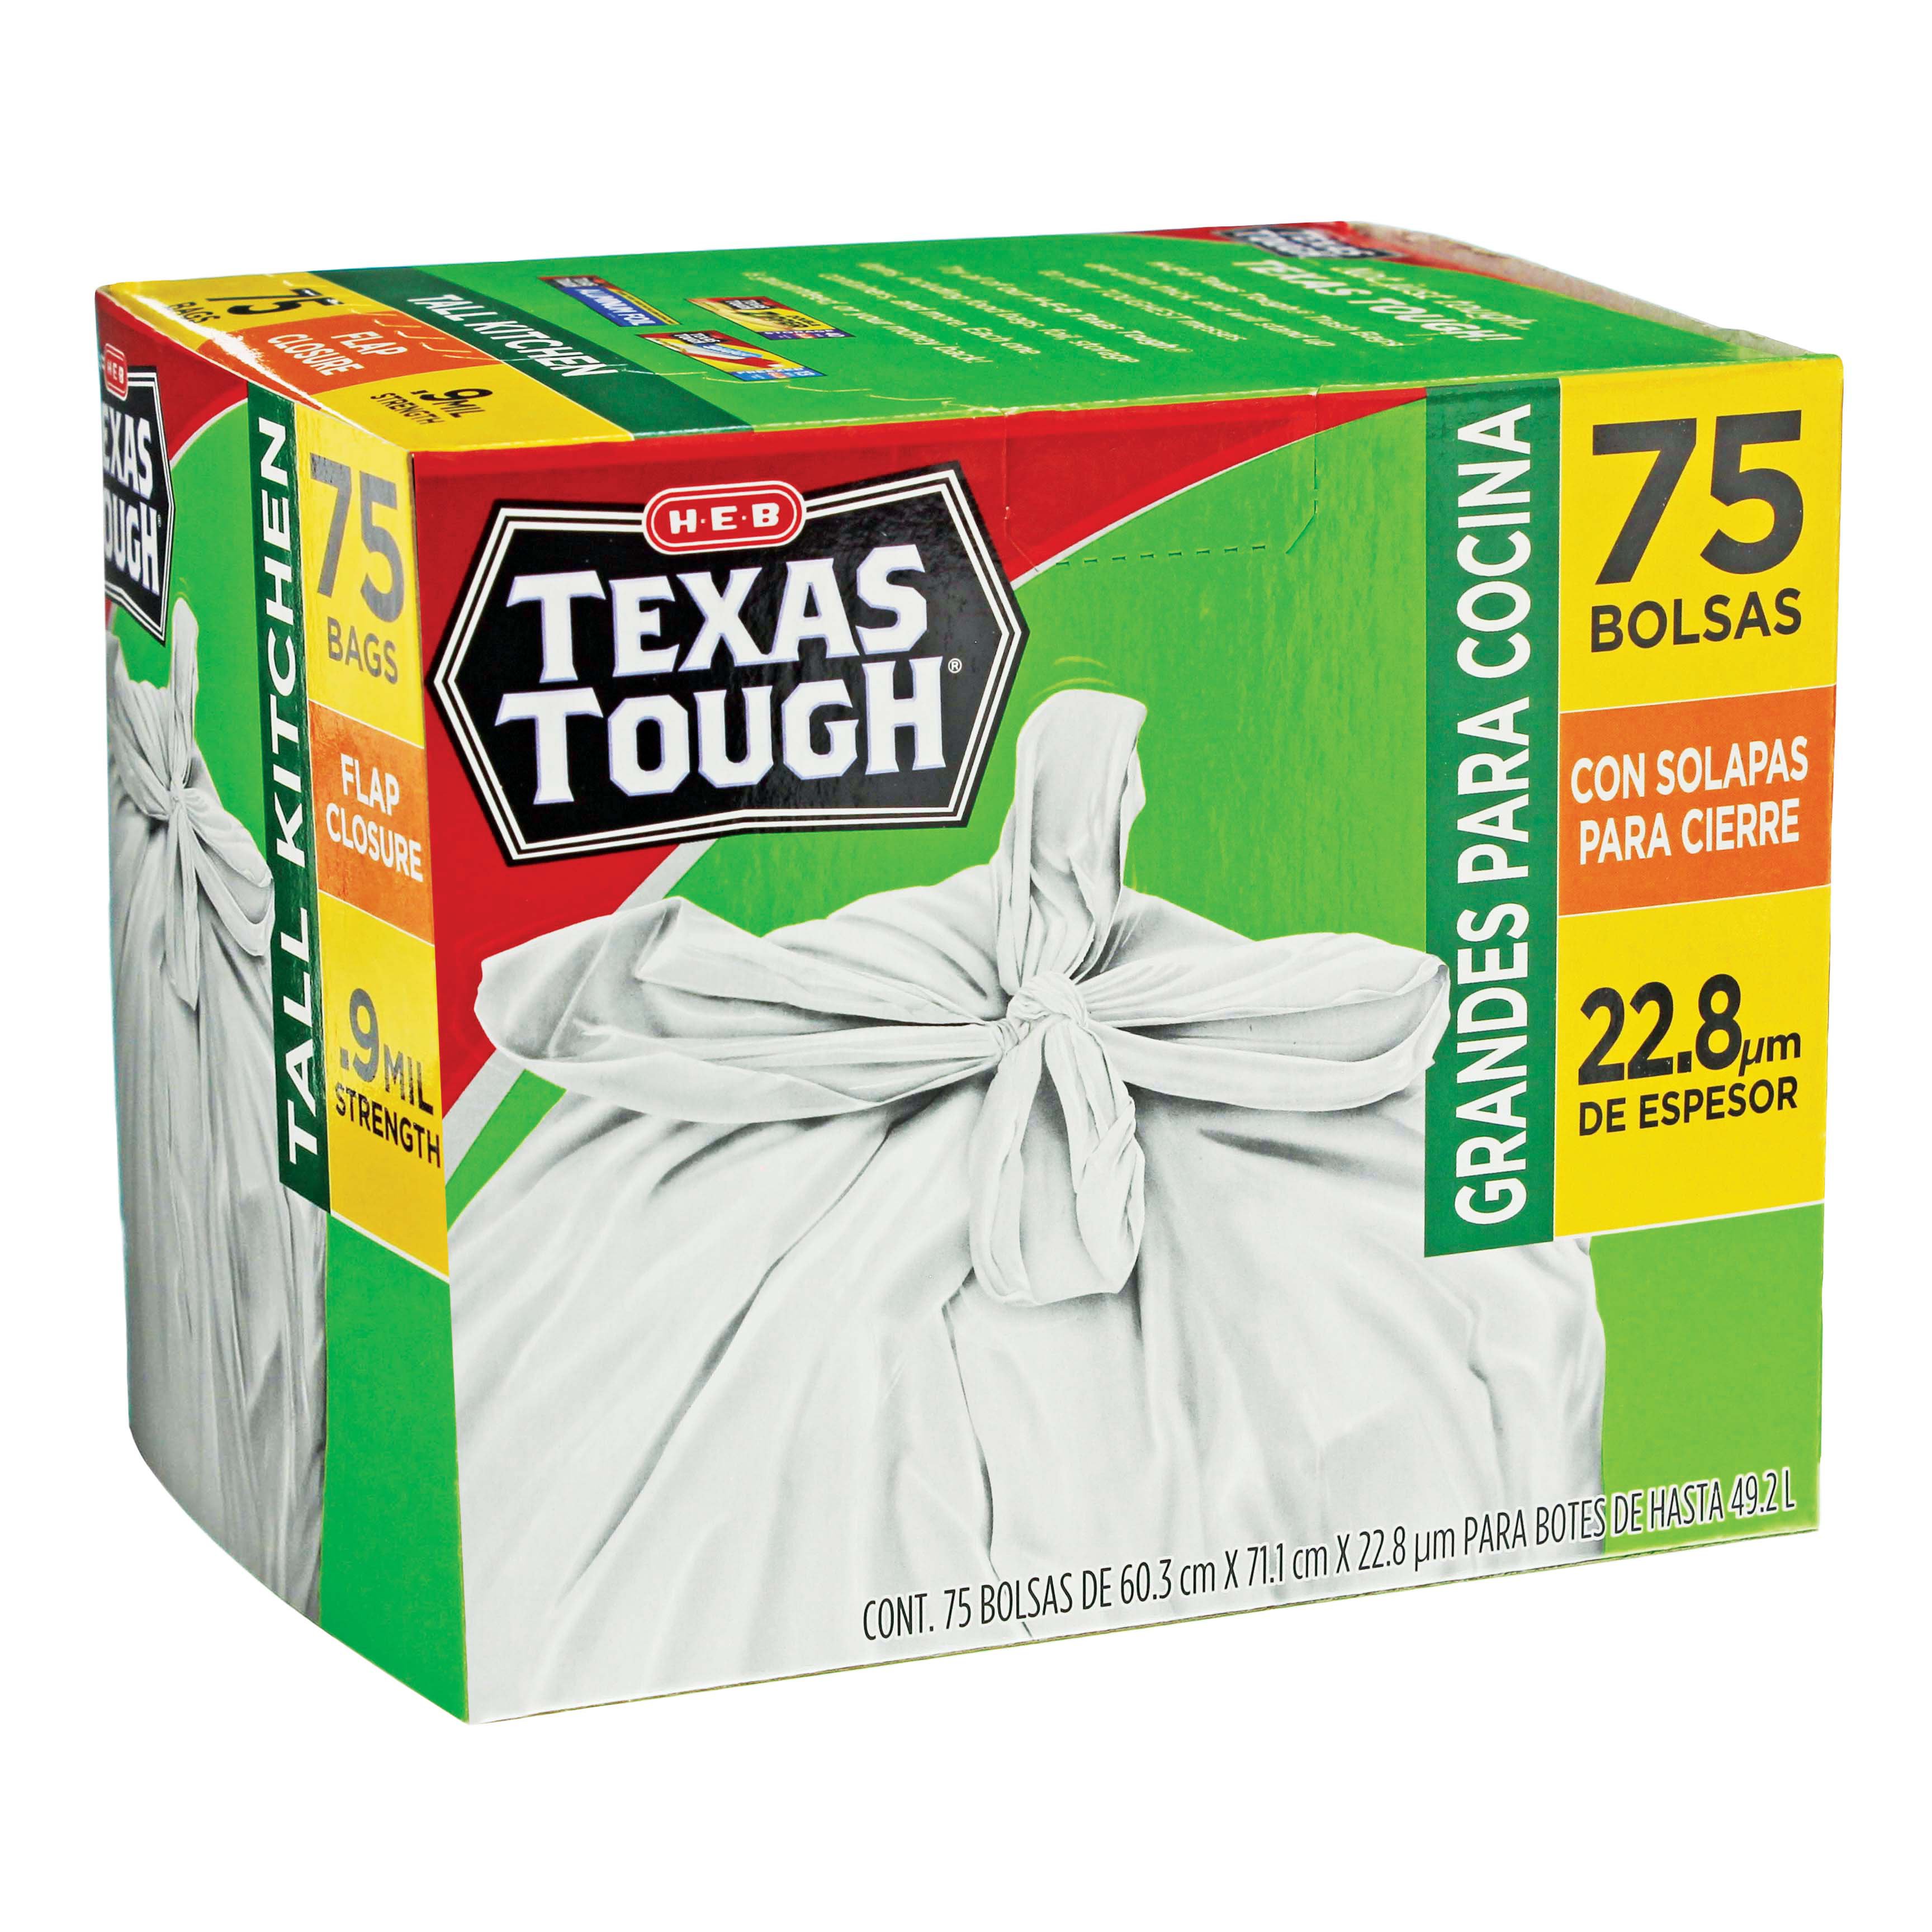 H-E-B Texas Tough Tall Kitchen Flex Trash Bags, 13 Gallon